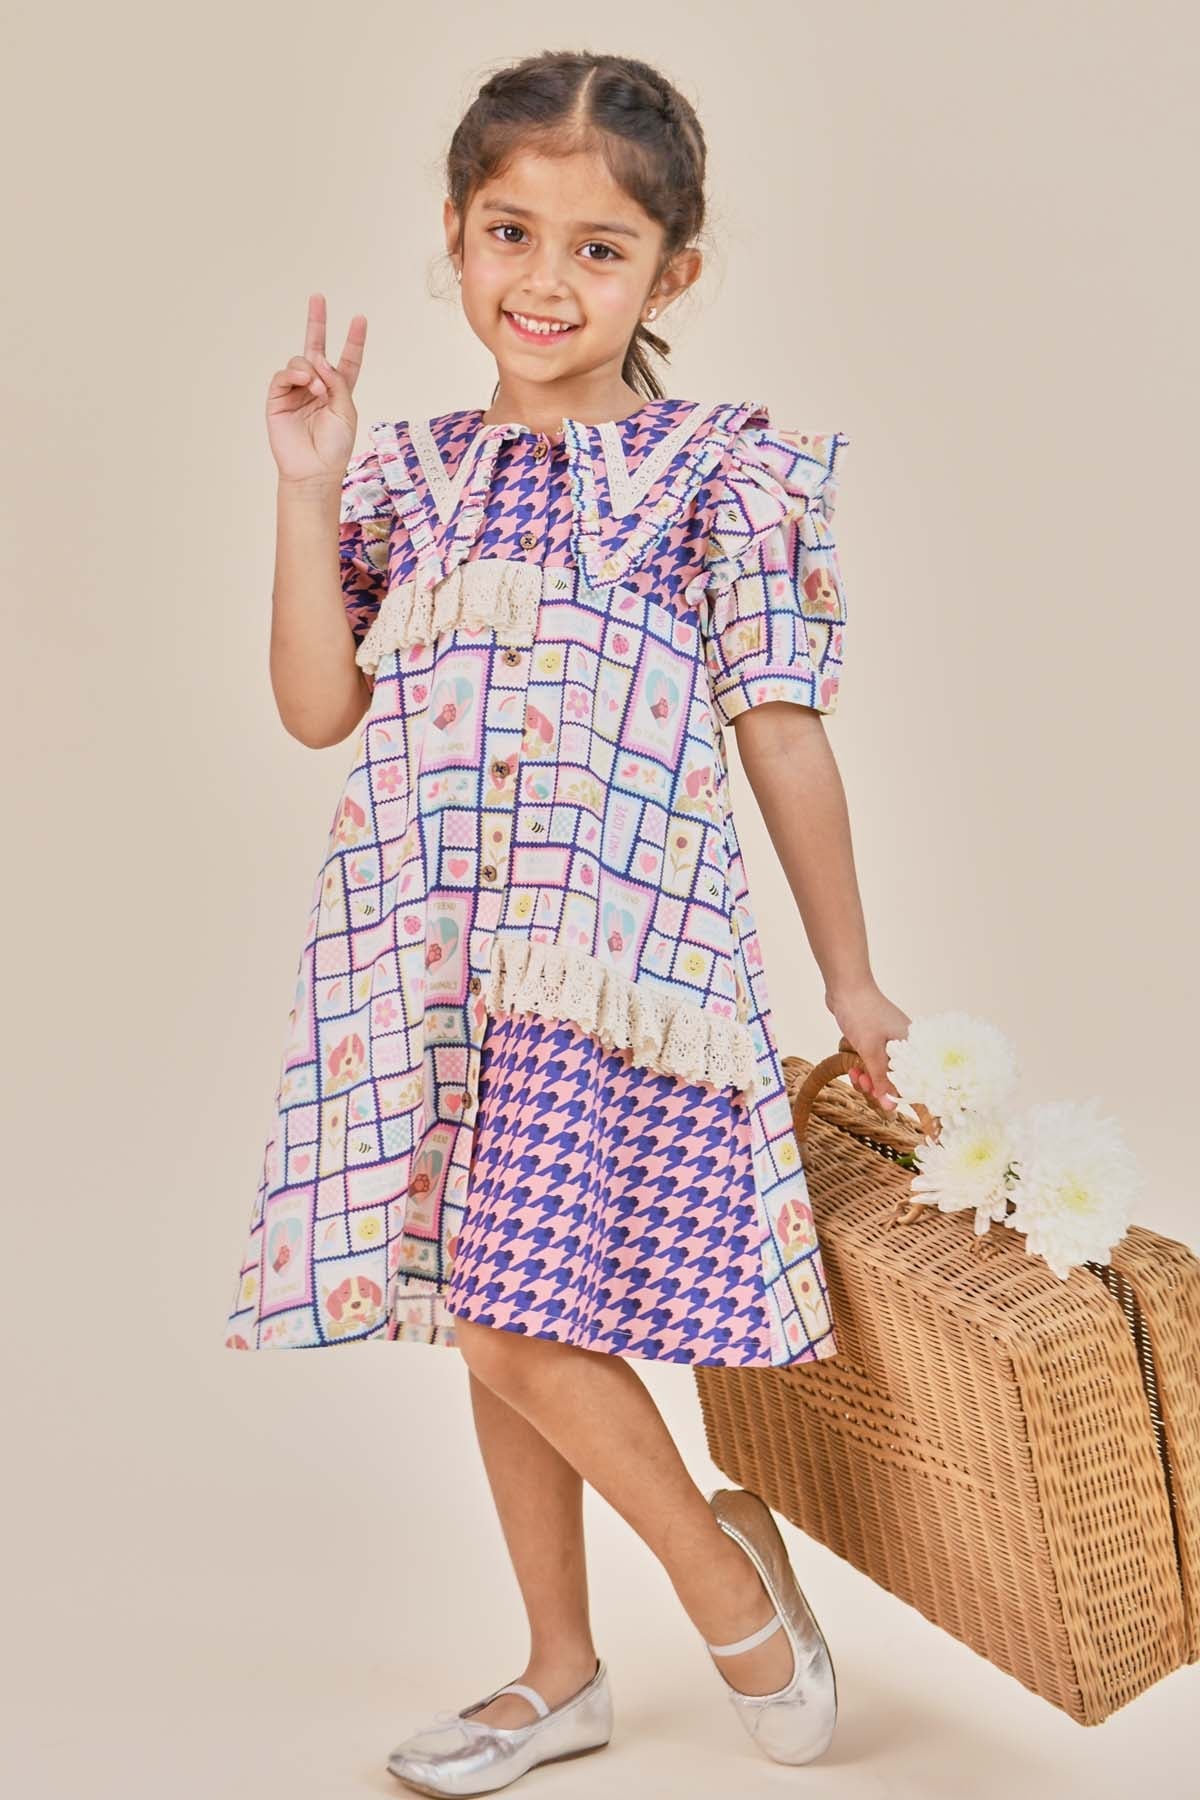 Little Shiro Blue & Brown Print Collar Dress for kids online at ScrollnShops